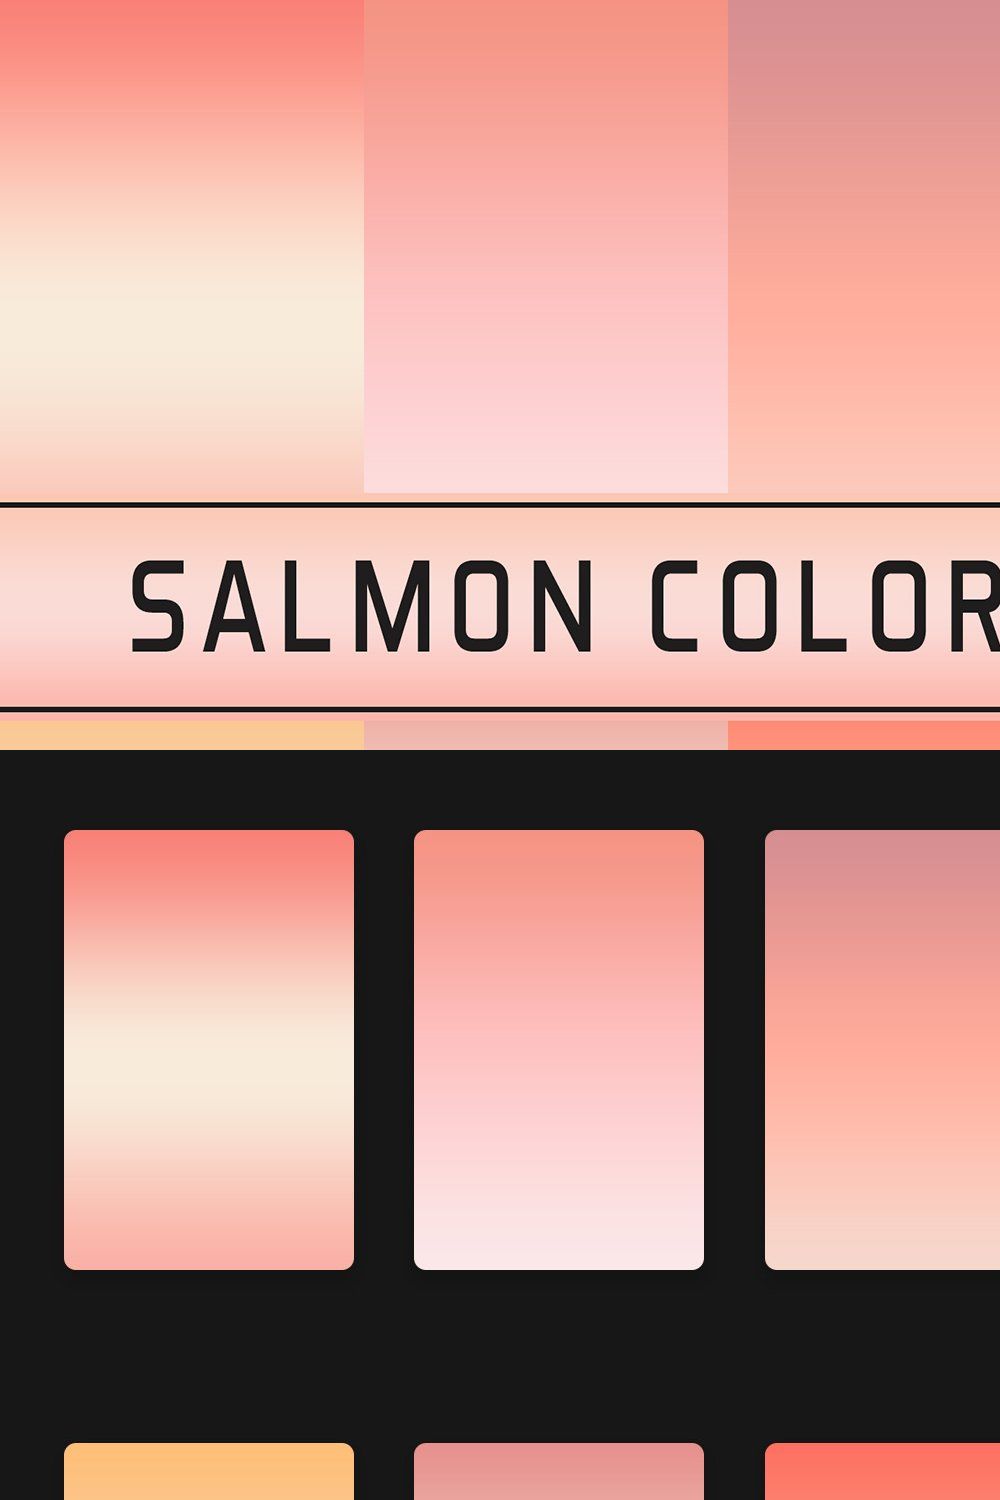 Salmon Color Gradients pinterest preview image.